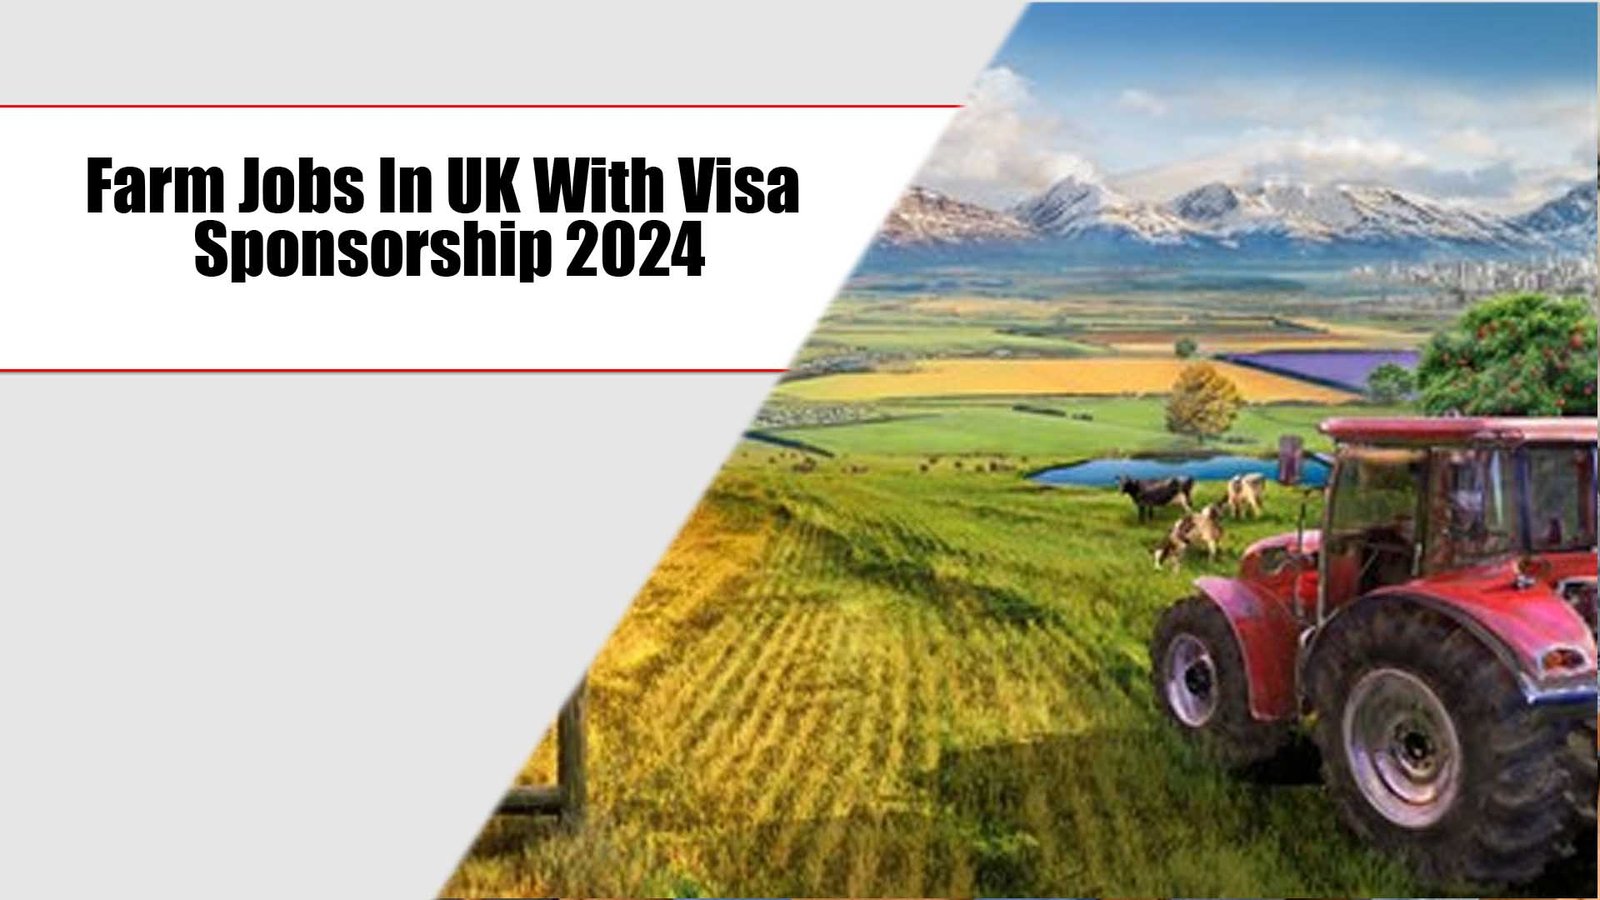 Farm Jobs In UK With Visa Sponsorship 2024